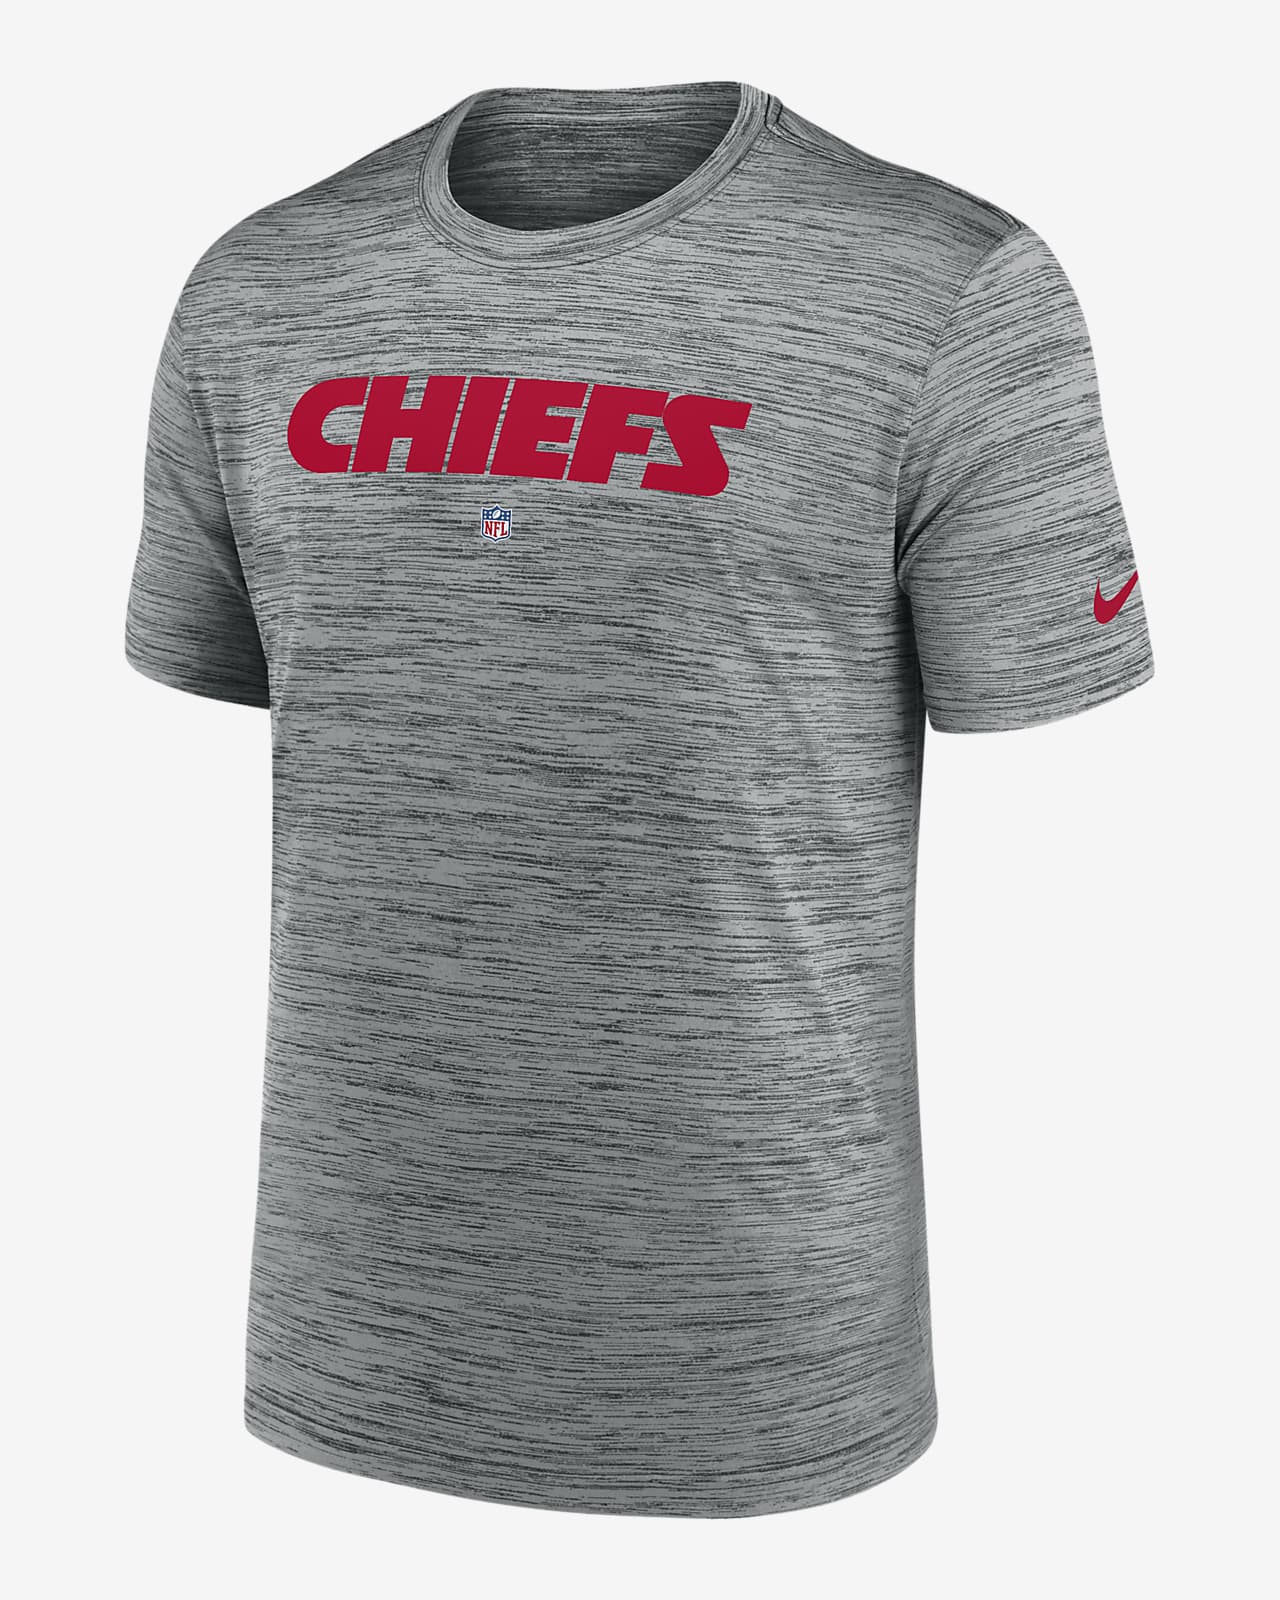 kansas chiefs t shirt